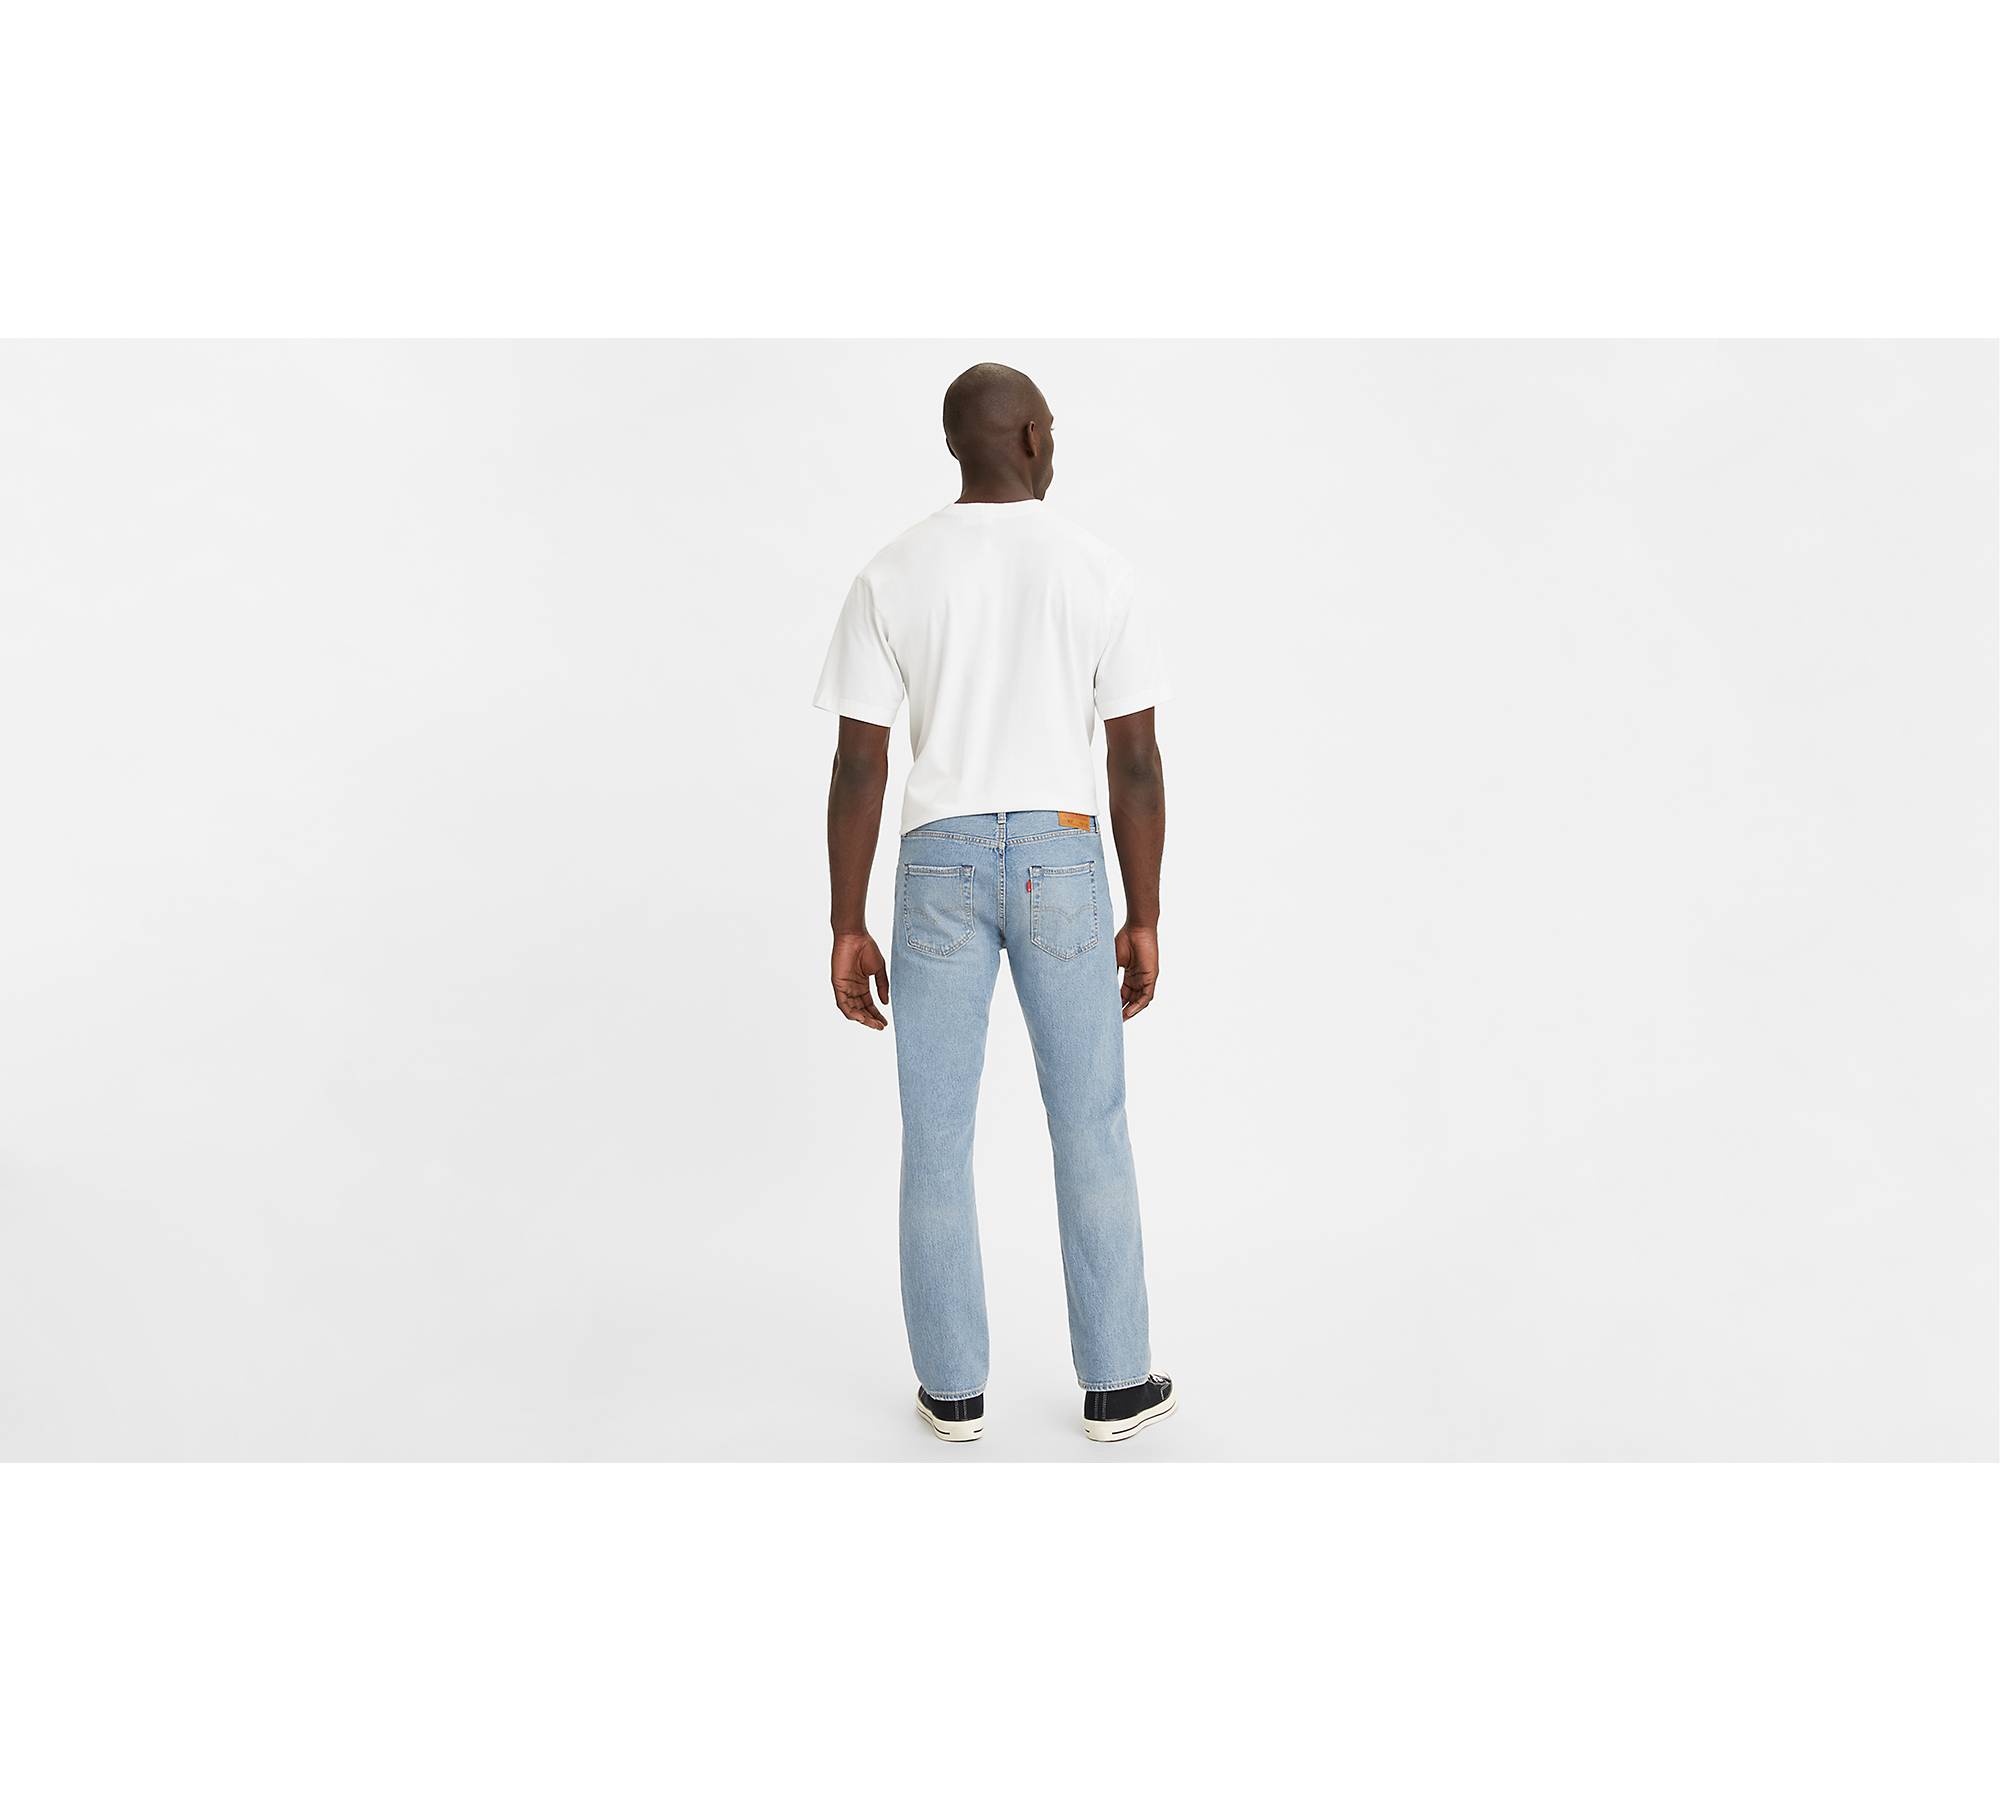 kapillærer fond evigt 501® Original Fit Men's Jeans - Light Wash | Levi's® US